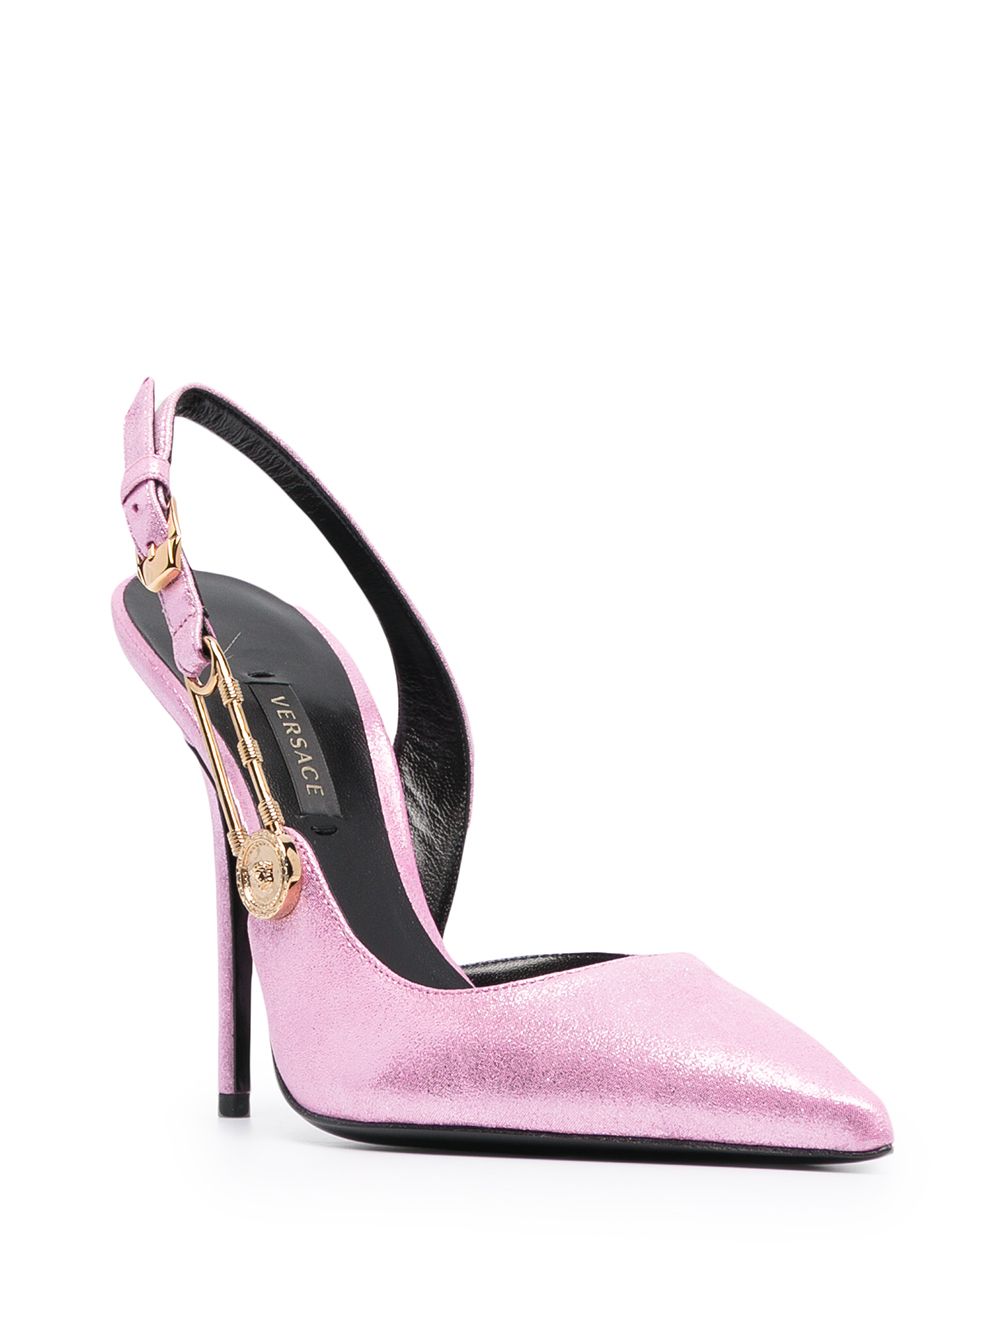 фото Versace туфли с эффектом металлик